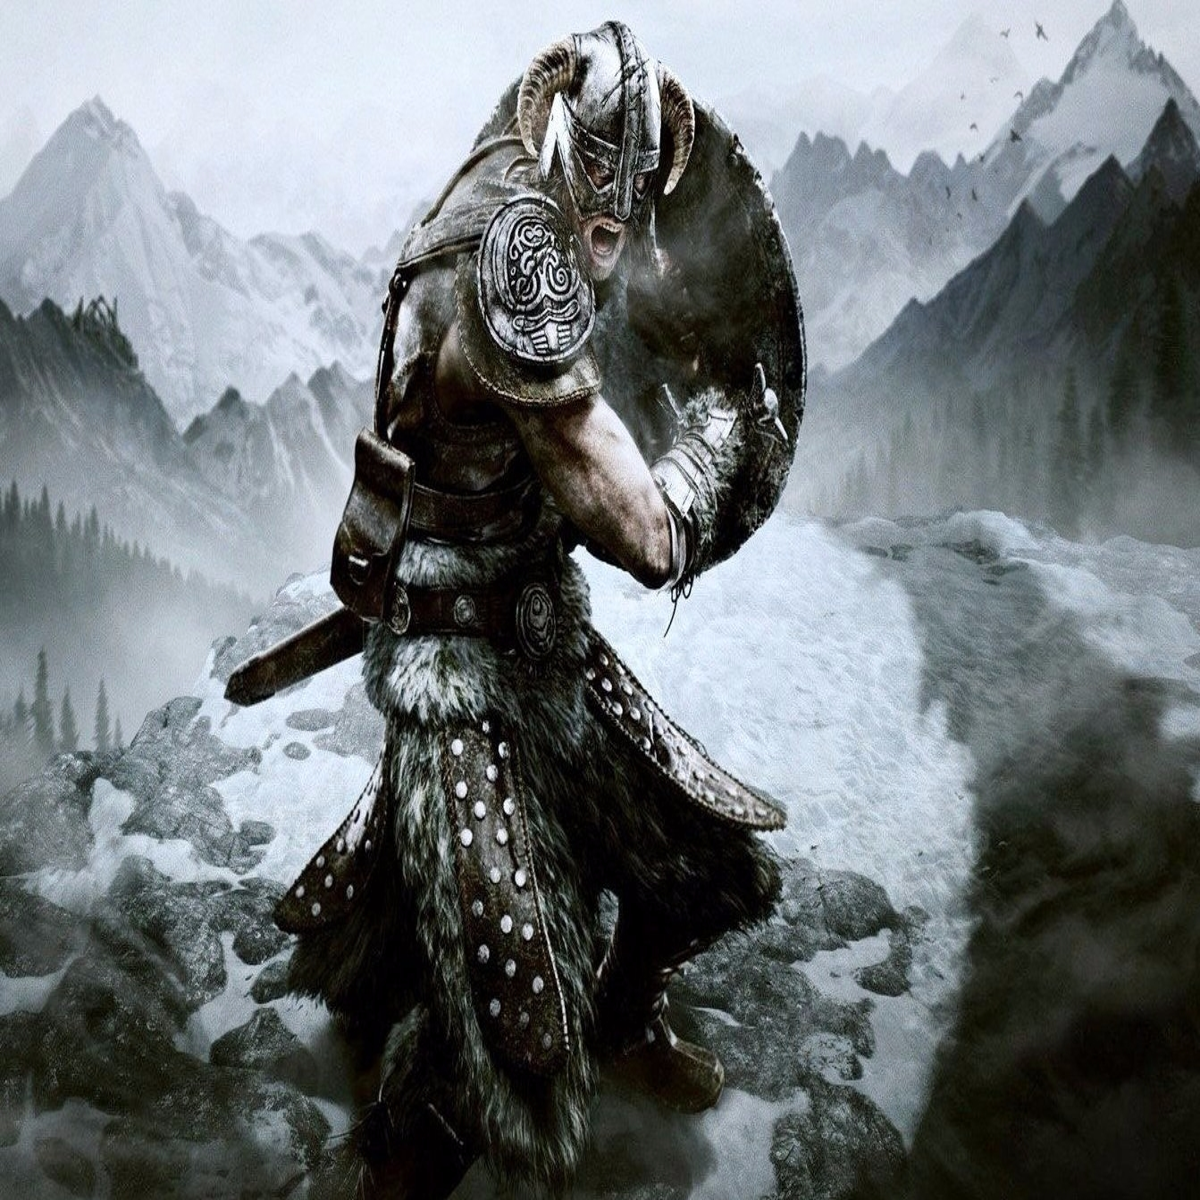 Confirman que The Elder Scrolls VI será exclusivo de Xbox y PC